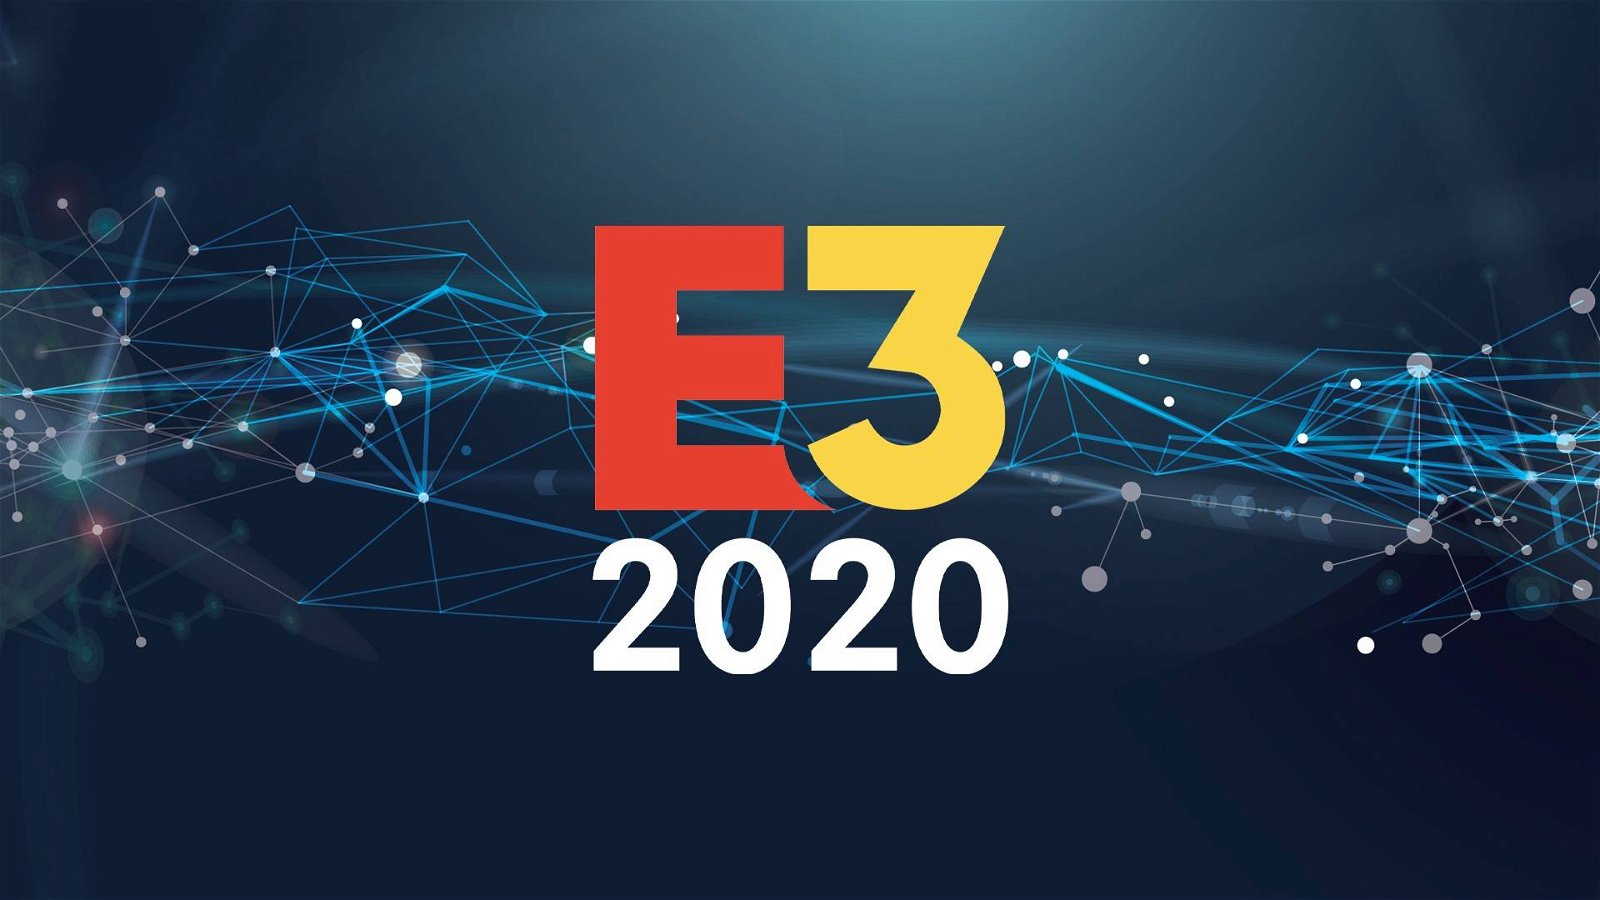 Immagine di E3 2020: anche l'evento digitale potrebbe essere stato cancellato?